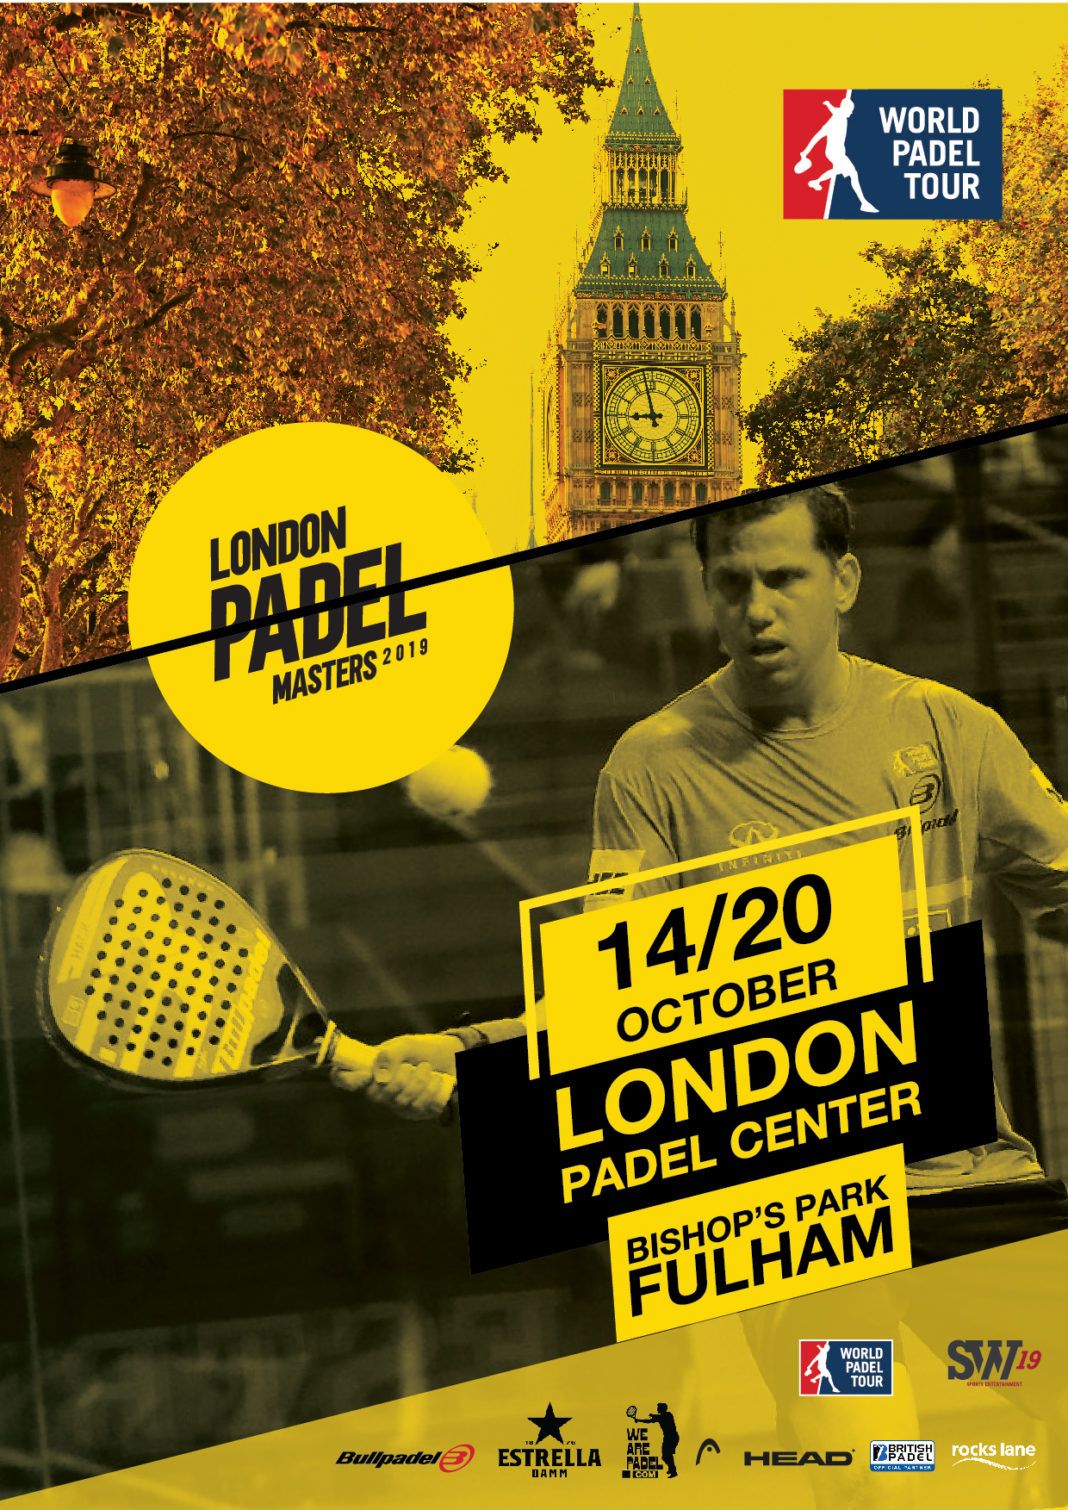 L'affiche de la tournée Padel du maître du monde à Londres.